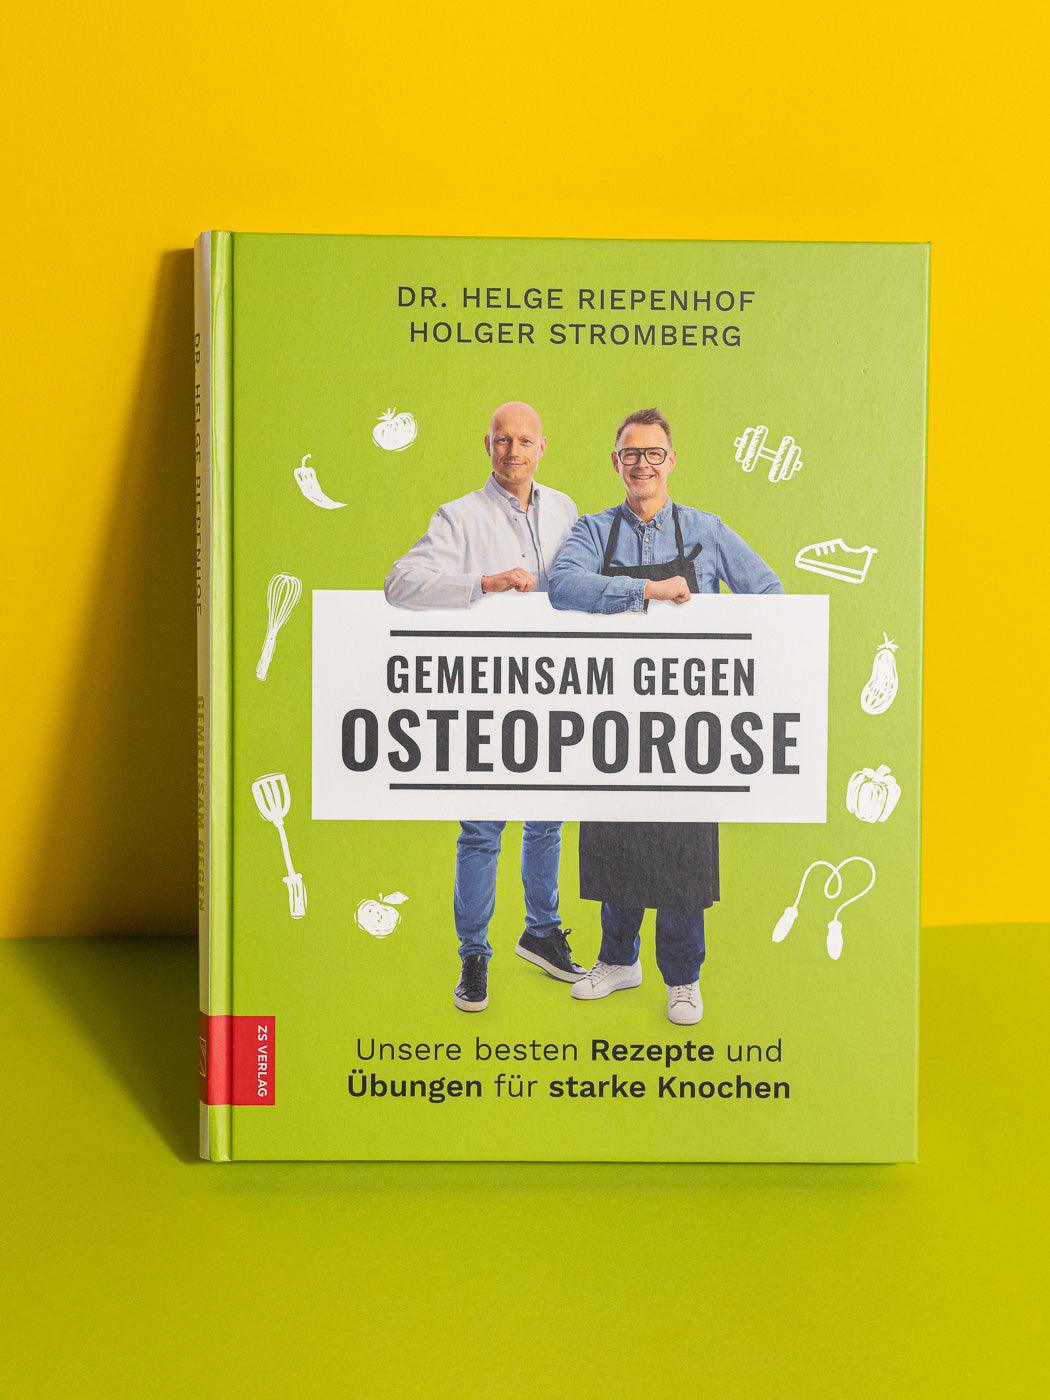 Frontansicht Buch “Gemeinsam gegen Osteoporose”